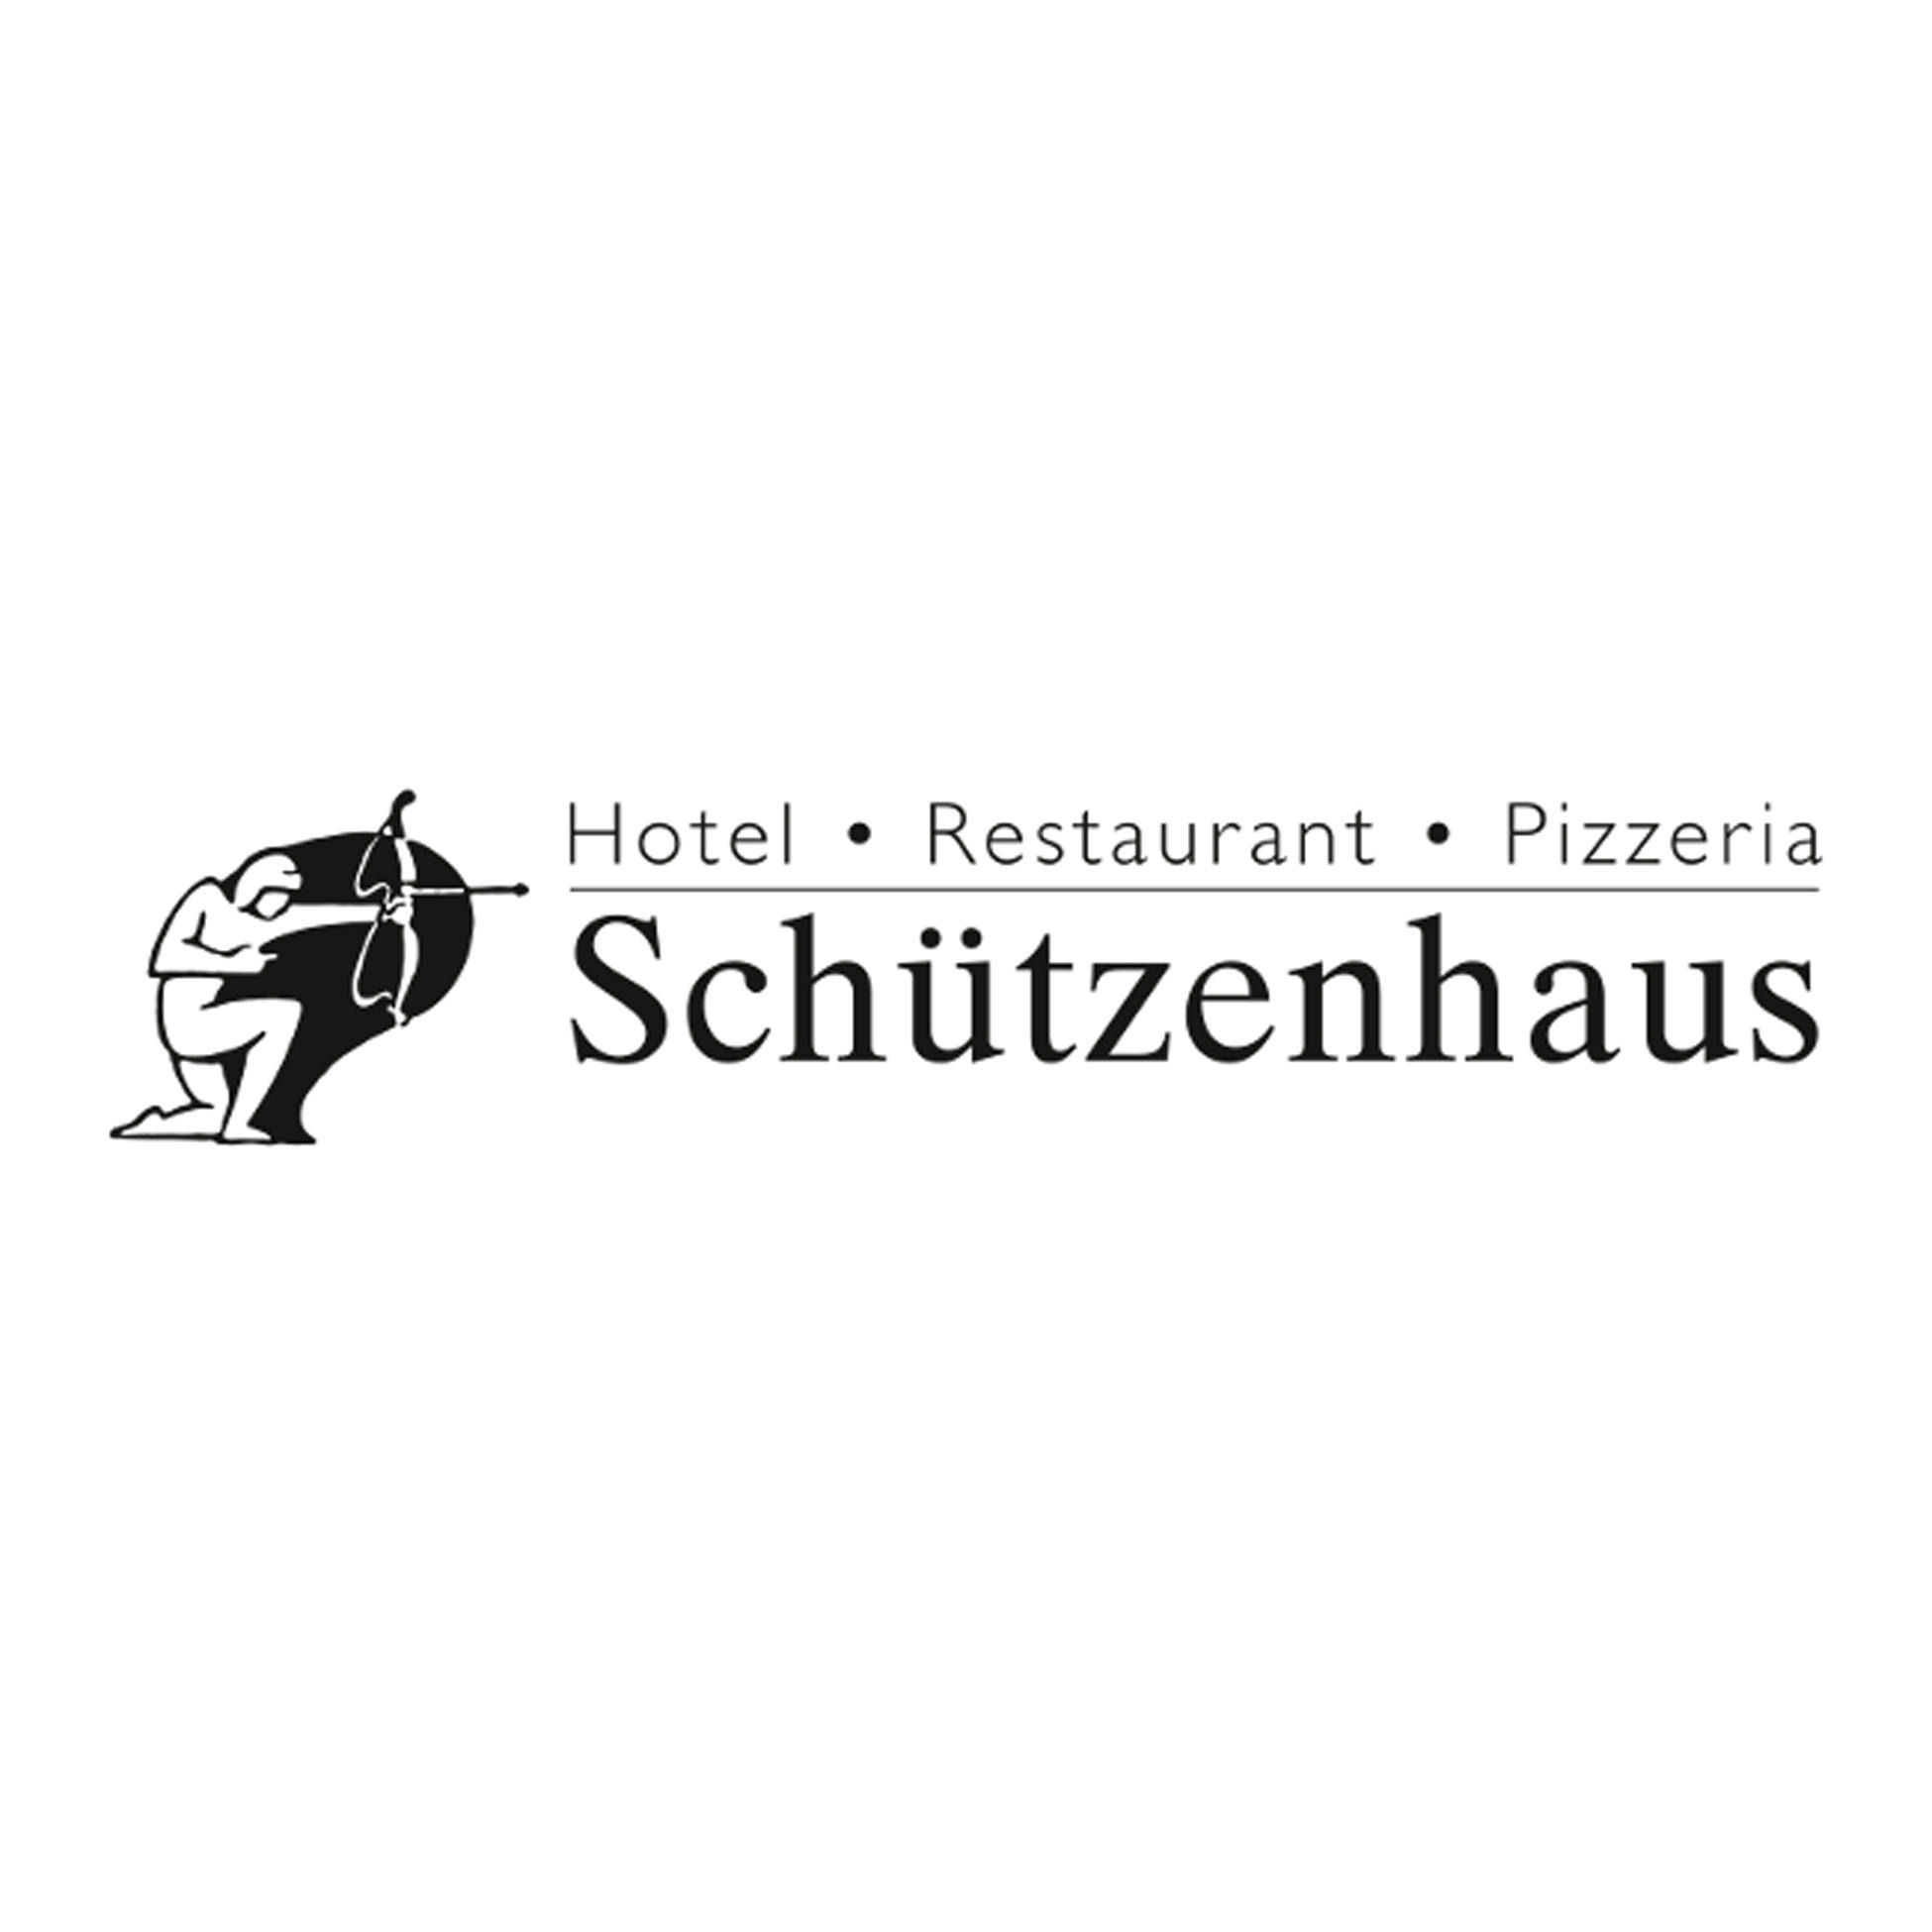 Hotel Restaurant Pizzeria Schützenhaus Logo